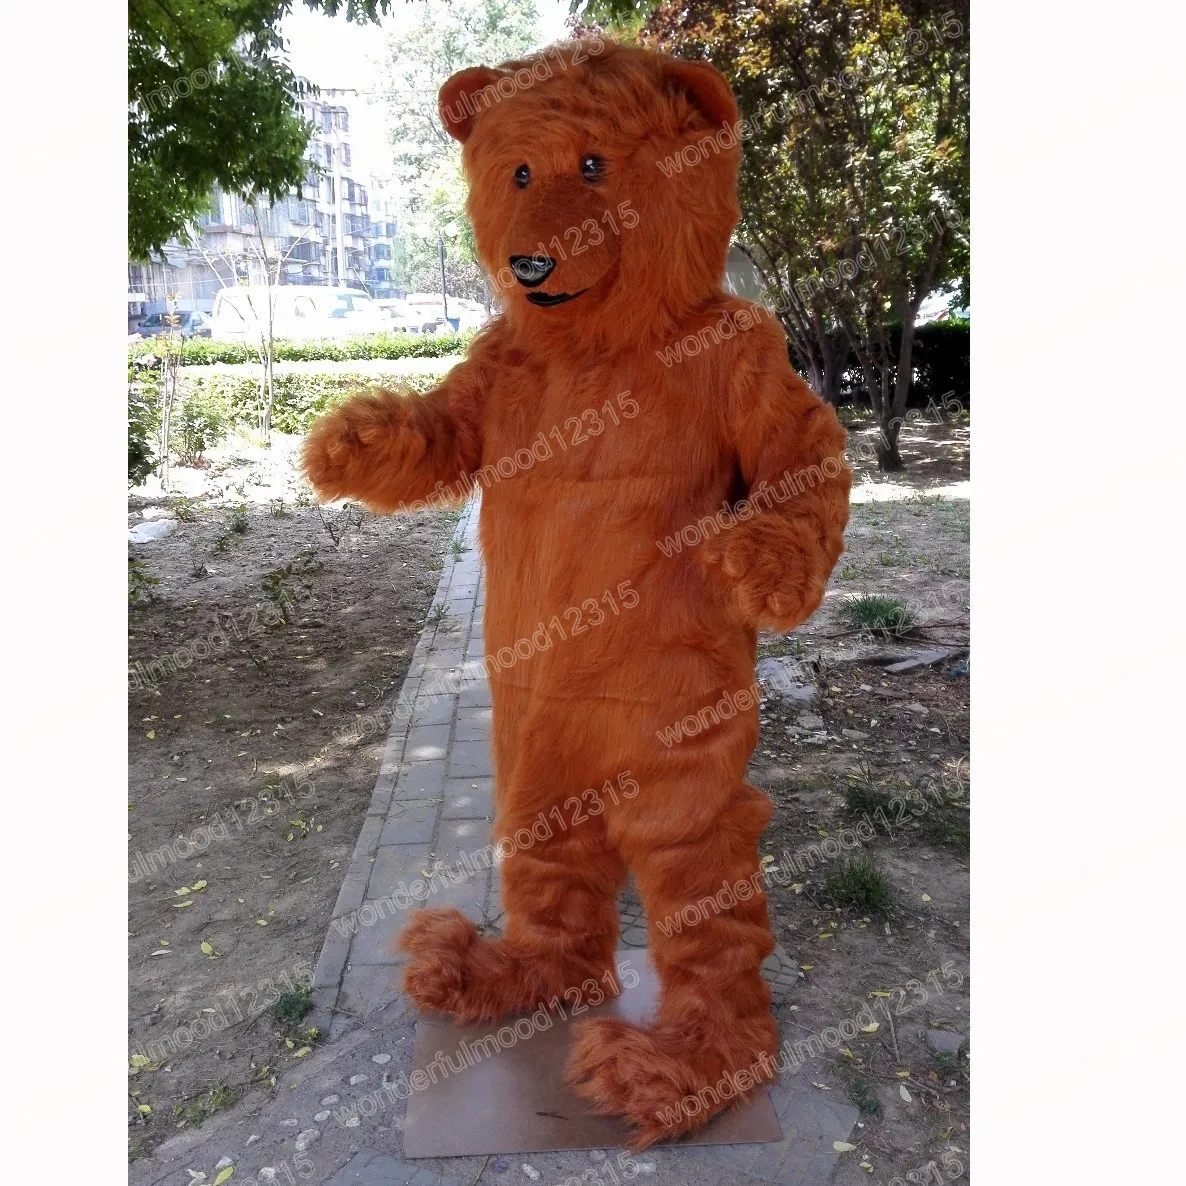 Boże Narodzenie długie włosy Grizzy Bear Mascot Costume Wysokiej jakości kreskówkowy strój postaci garnitur Halloween na zewnątrz impreza karnawałowa festiwal fantazyjna sukienka